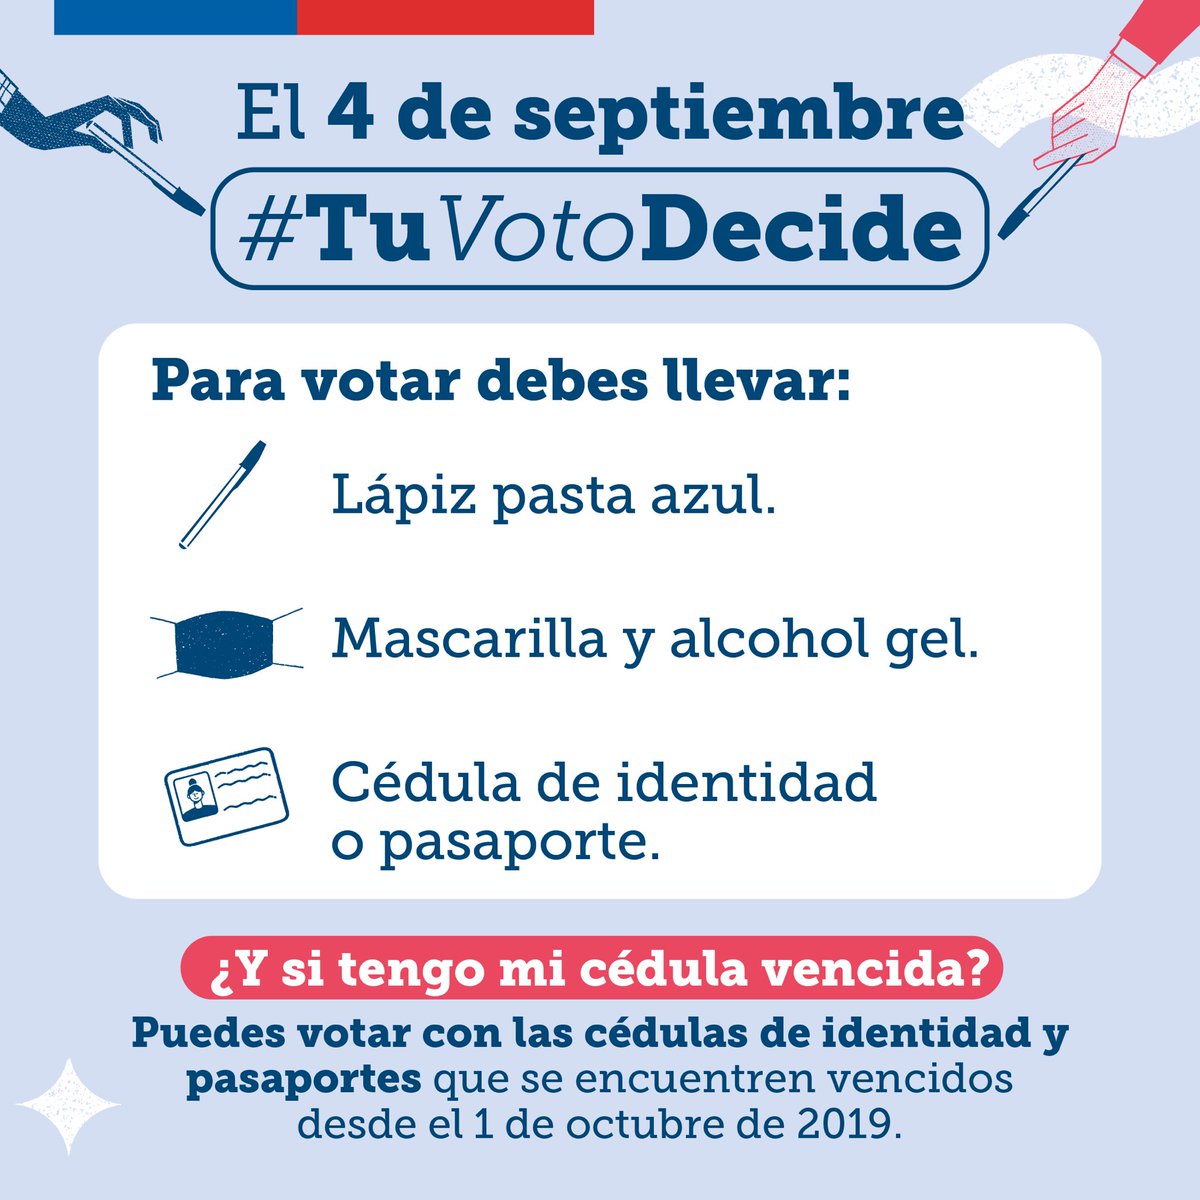 Hoy, #TuVotoDecide. Revisa qué necesitas para votar en el #Plebiscito2022 y sé protagonista en esta jornada histórica 🗳️ Más info en tuvotodecide.cl